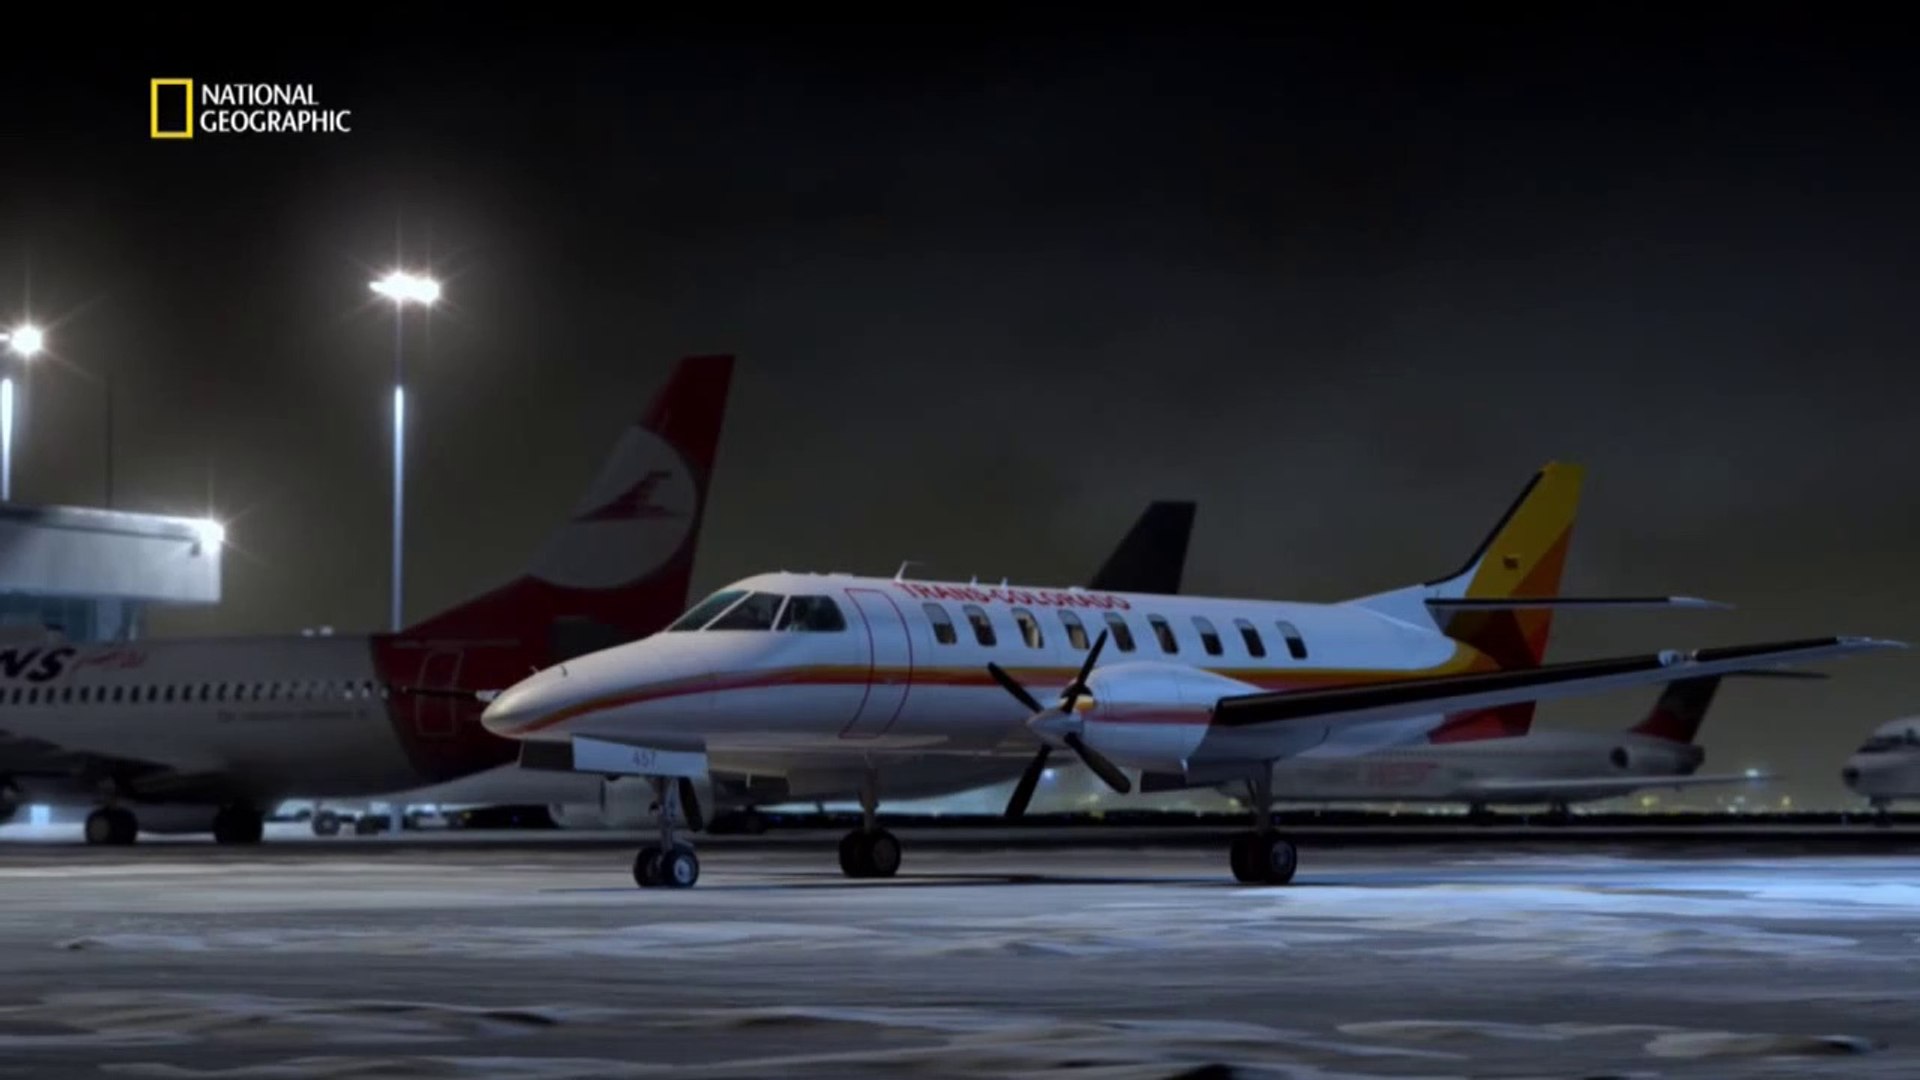 Расследование авиакатастроф 1. Trans Colorado 2286. Lam Mozambique Airlines Flight 470 crash animation фото.